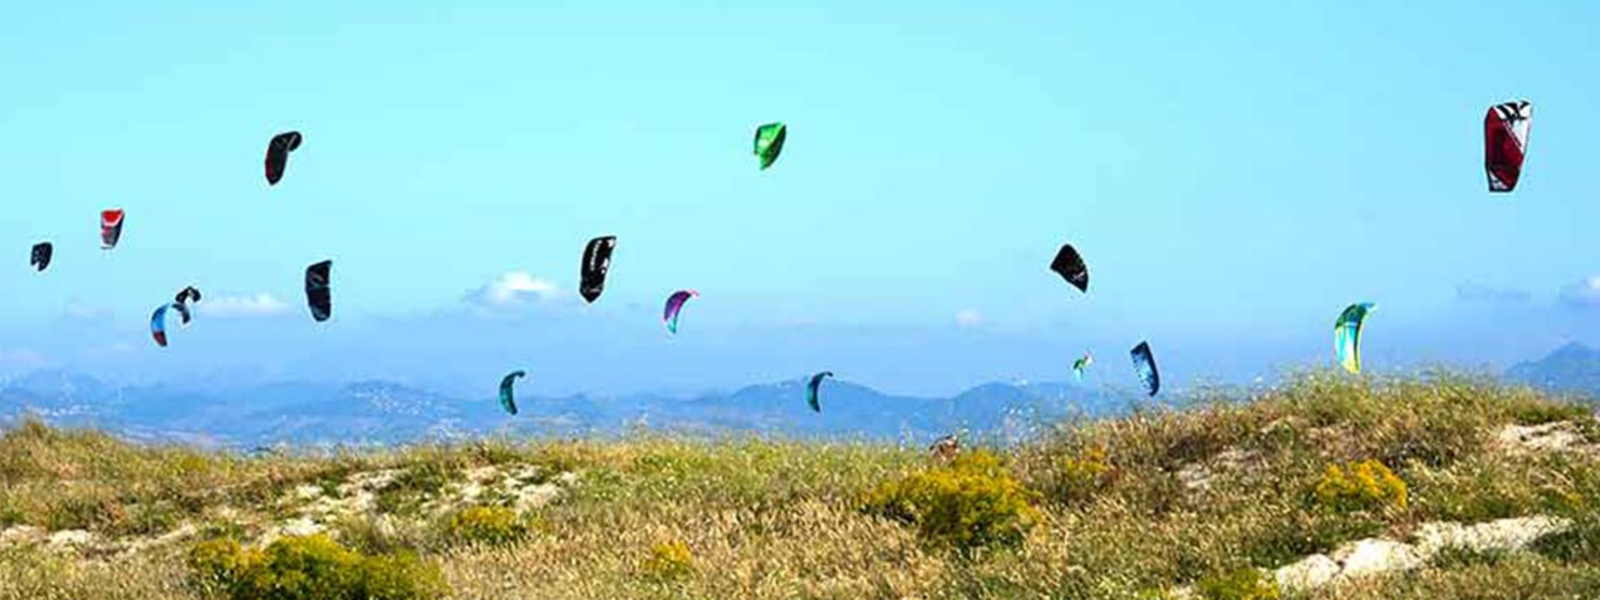 Der Strand von Tarifa eignet sich ideal zum Kitesurfen oder Windsurfen